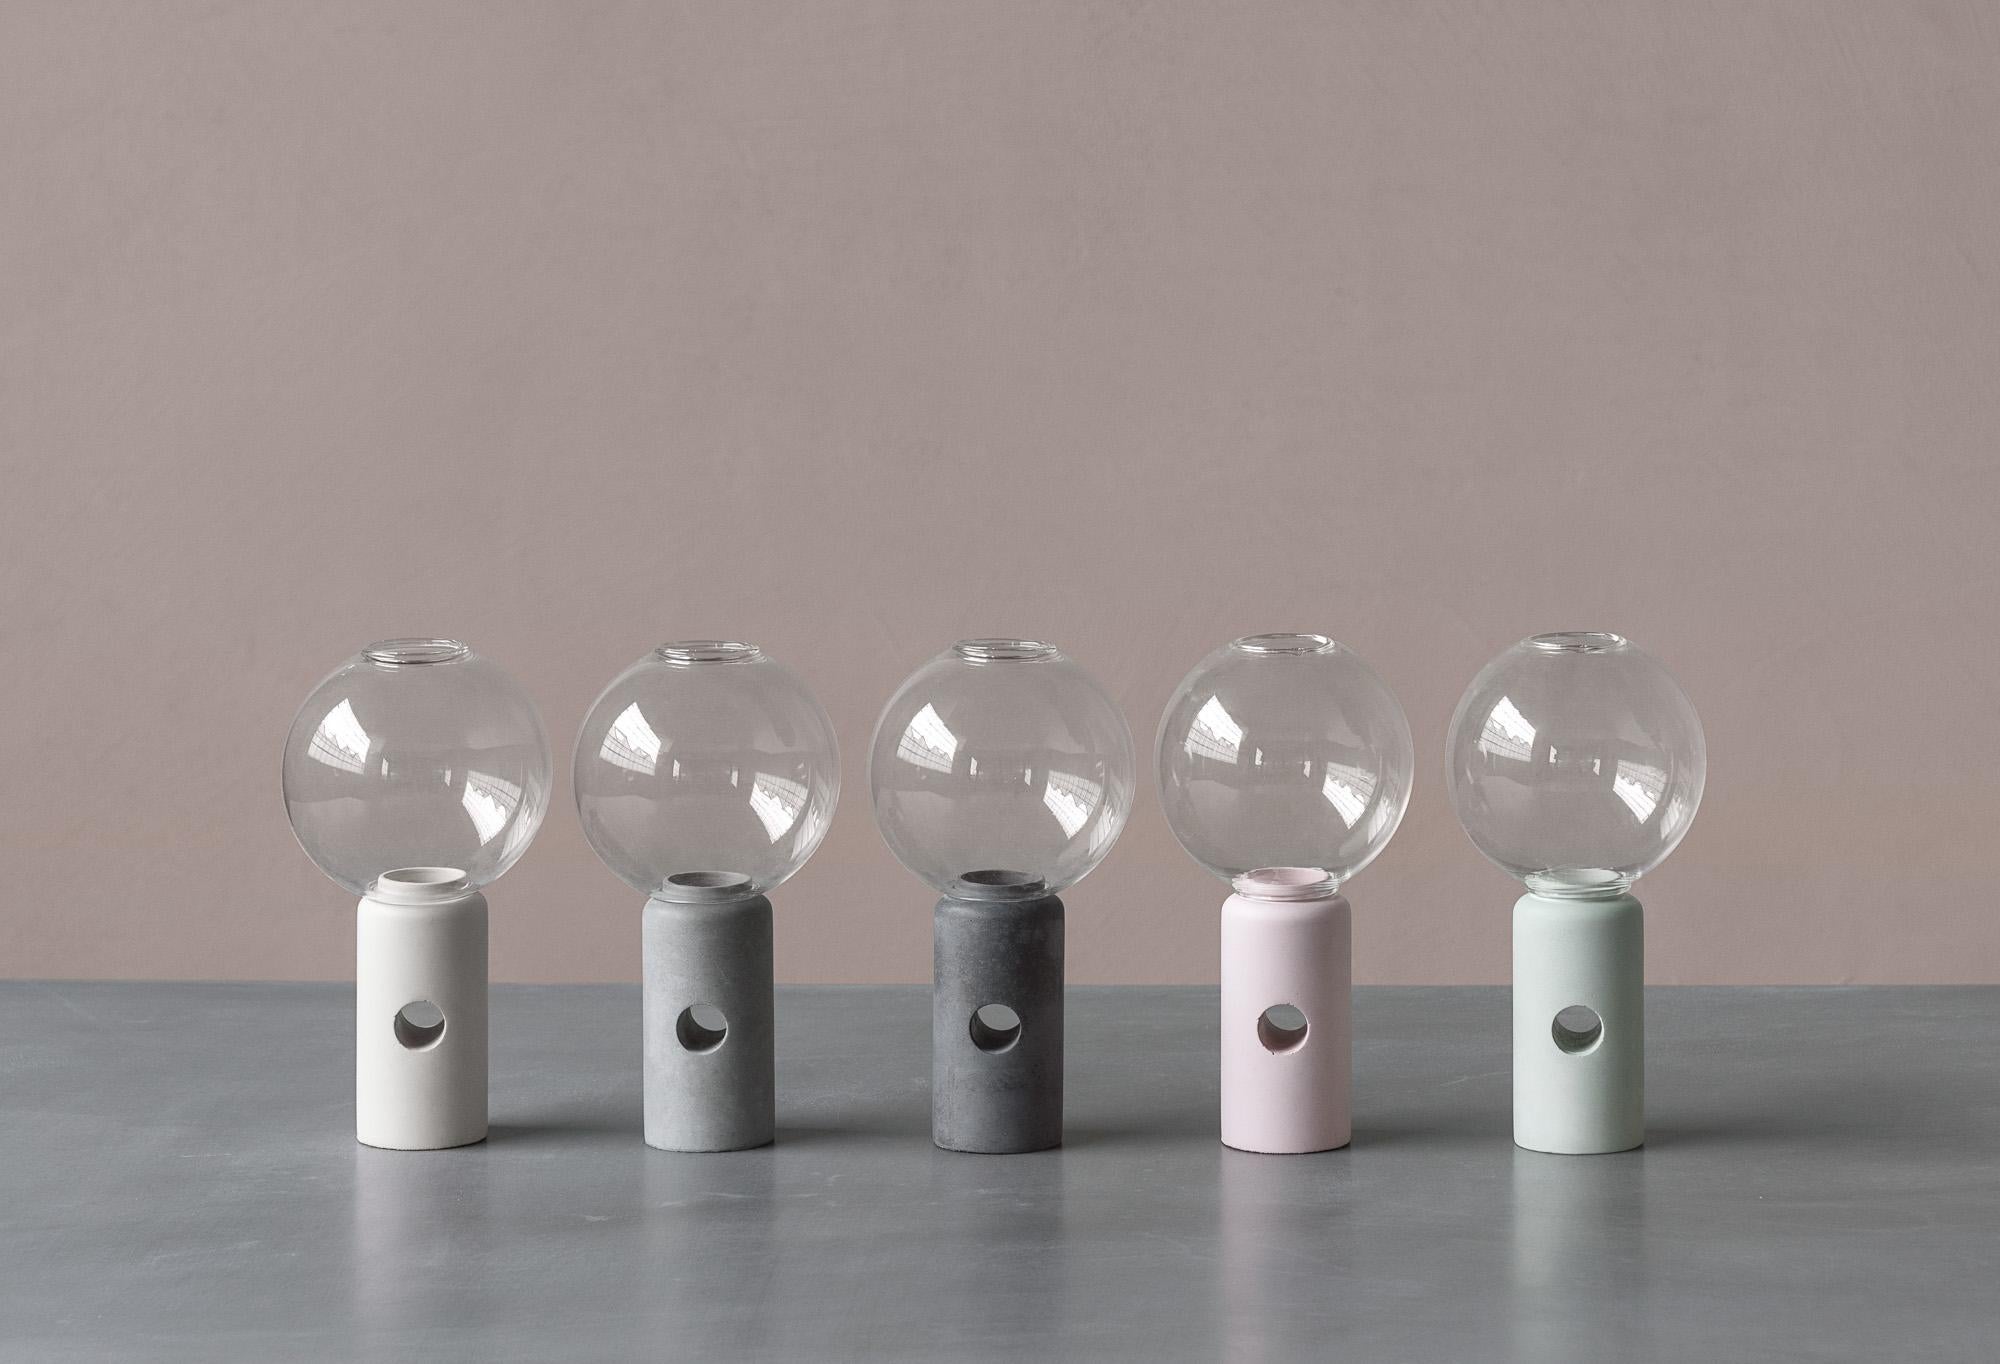 Der Kerzenhalter Efesto ist ein handwerkliches Designprodukt aus der Kollektion Betonaccessoires von Forma & Cemento. Dieser Kerzenständer ist aus Beton und geblasenem Glas gefertigt, um ein einzigartiges Materialspiel zu schaffen, das auf die